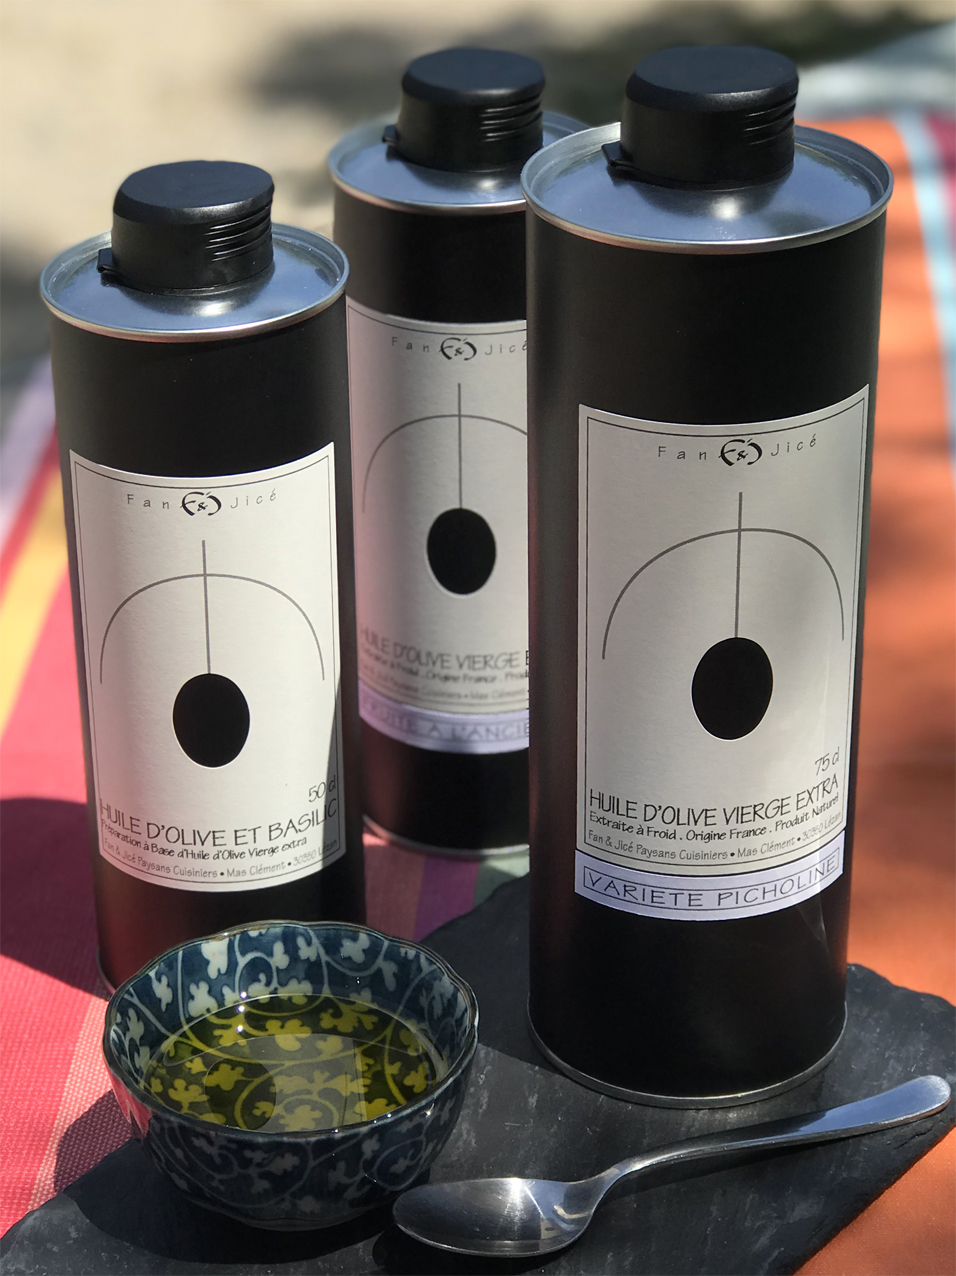 Les huiles d'olive de Fan et Jicé